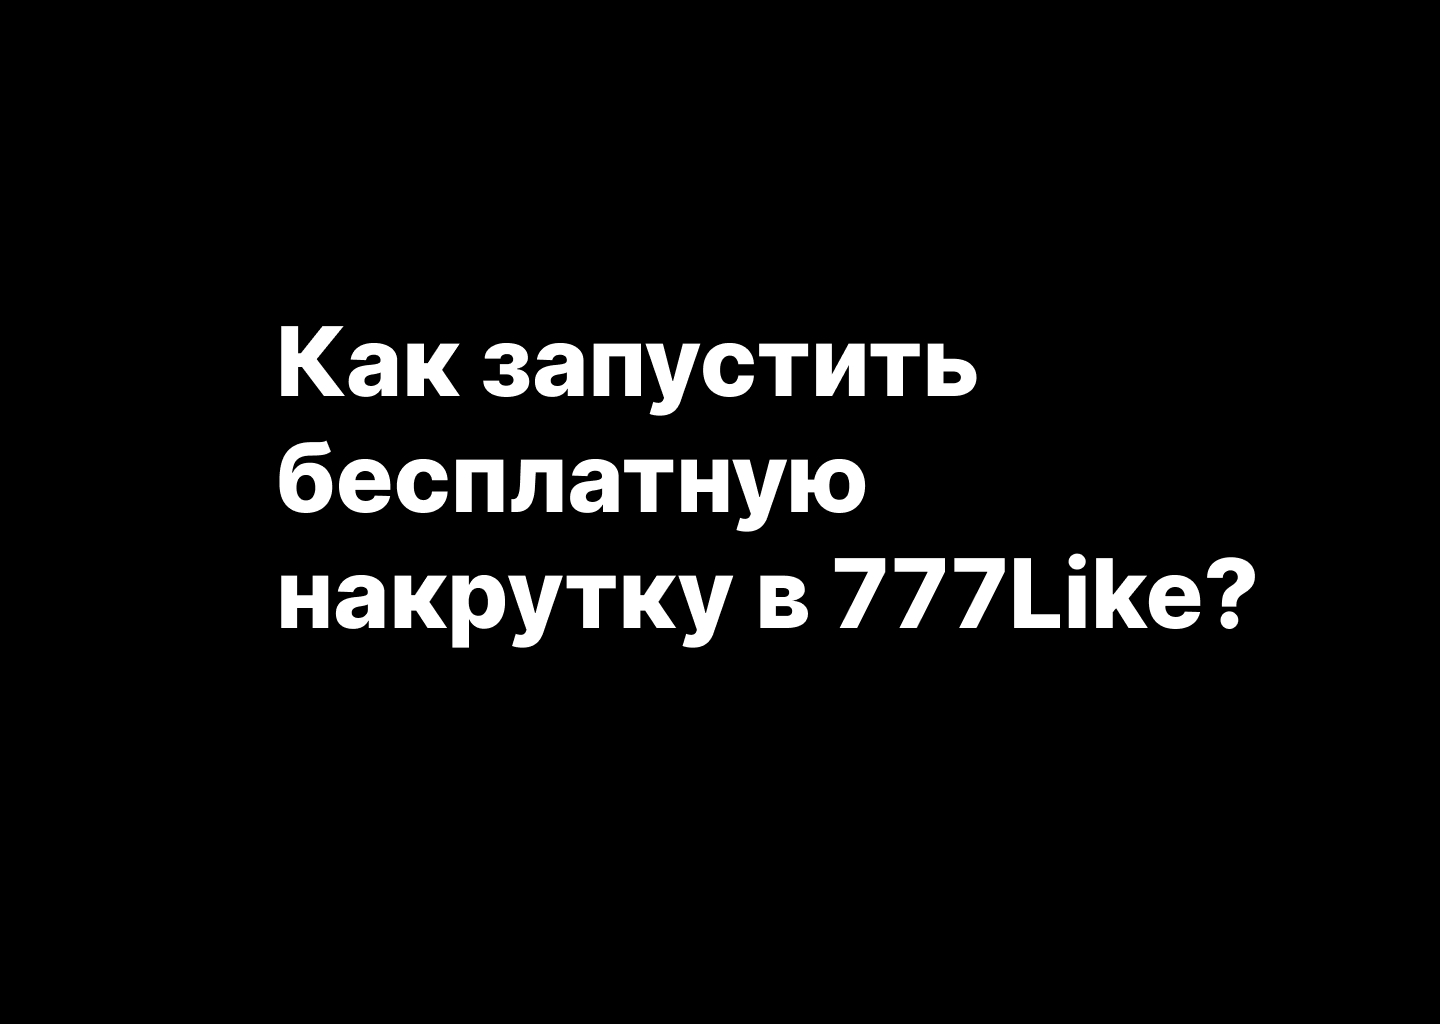 Как запустить бесплатную накрутку в сервисе 777Like.ru? Инструкция 